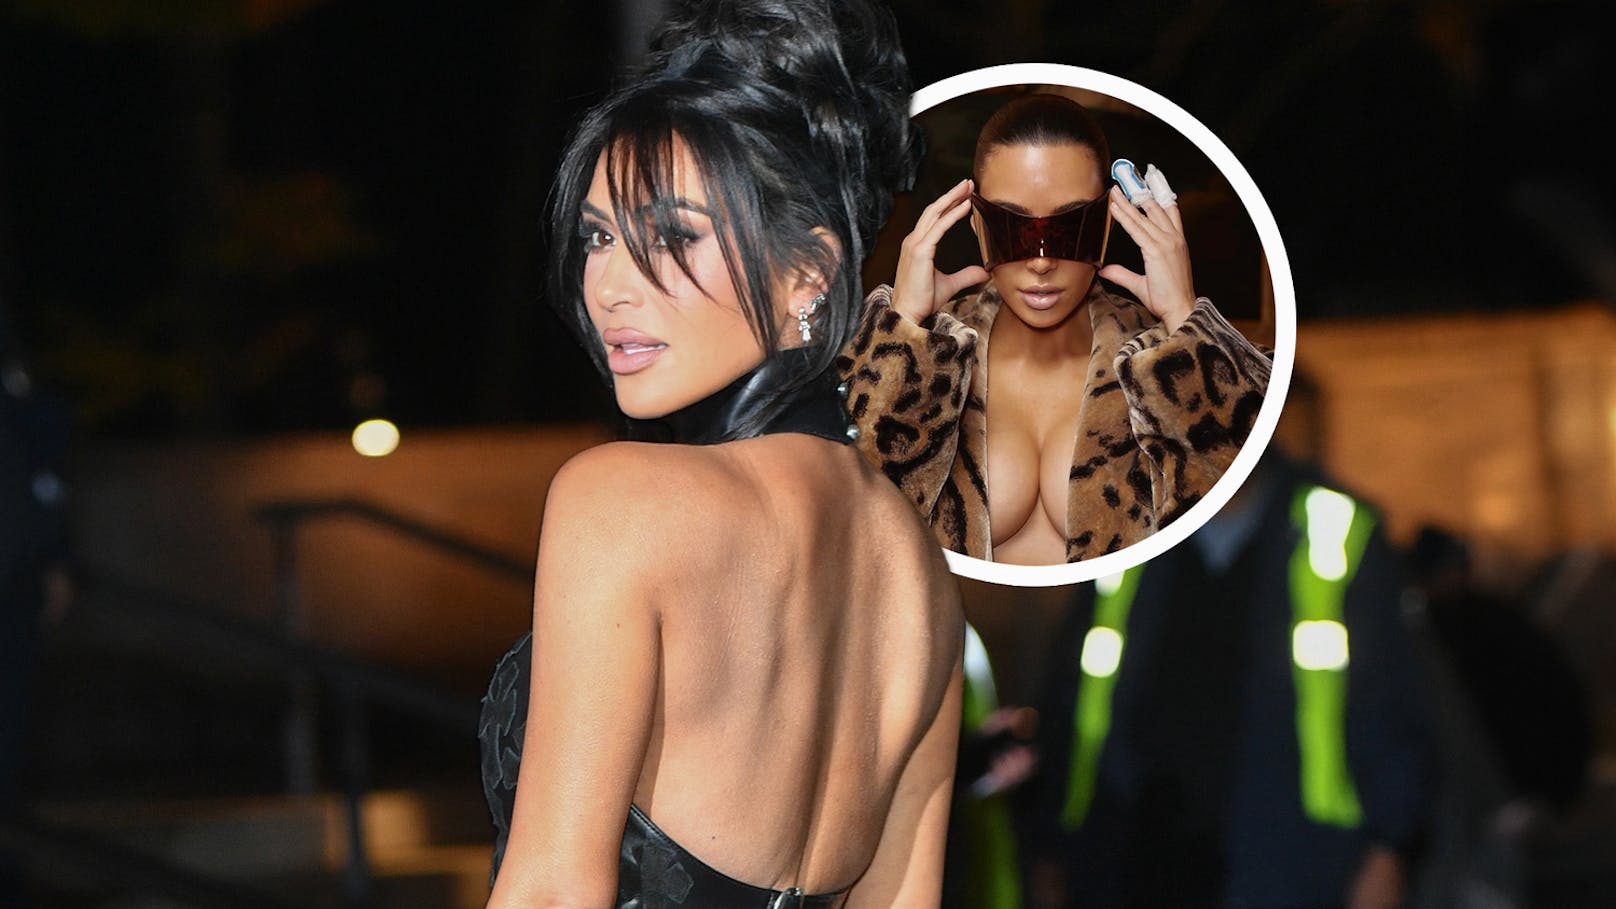 Kim zeigt ihre Brüste – Alle schauen wo anders hin